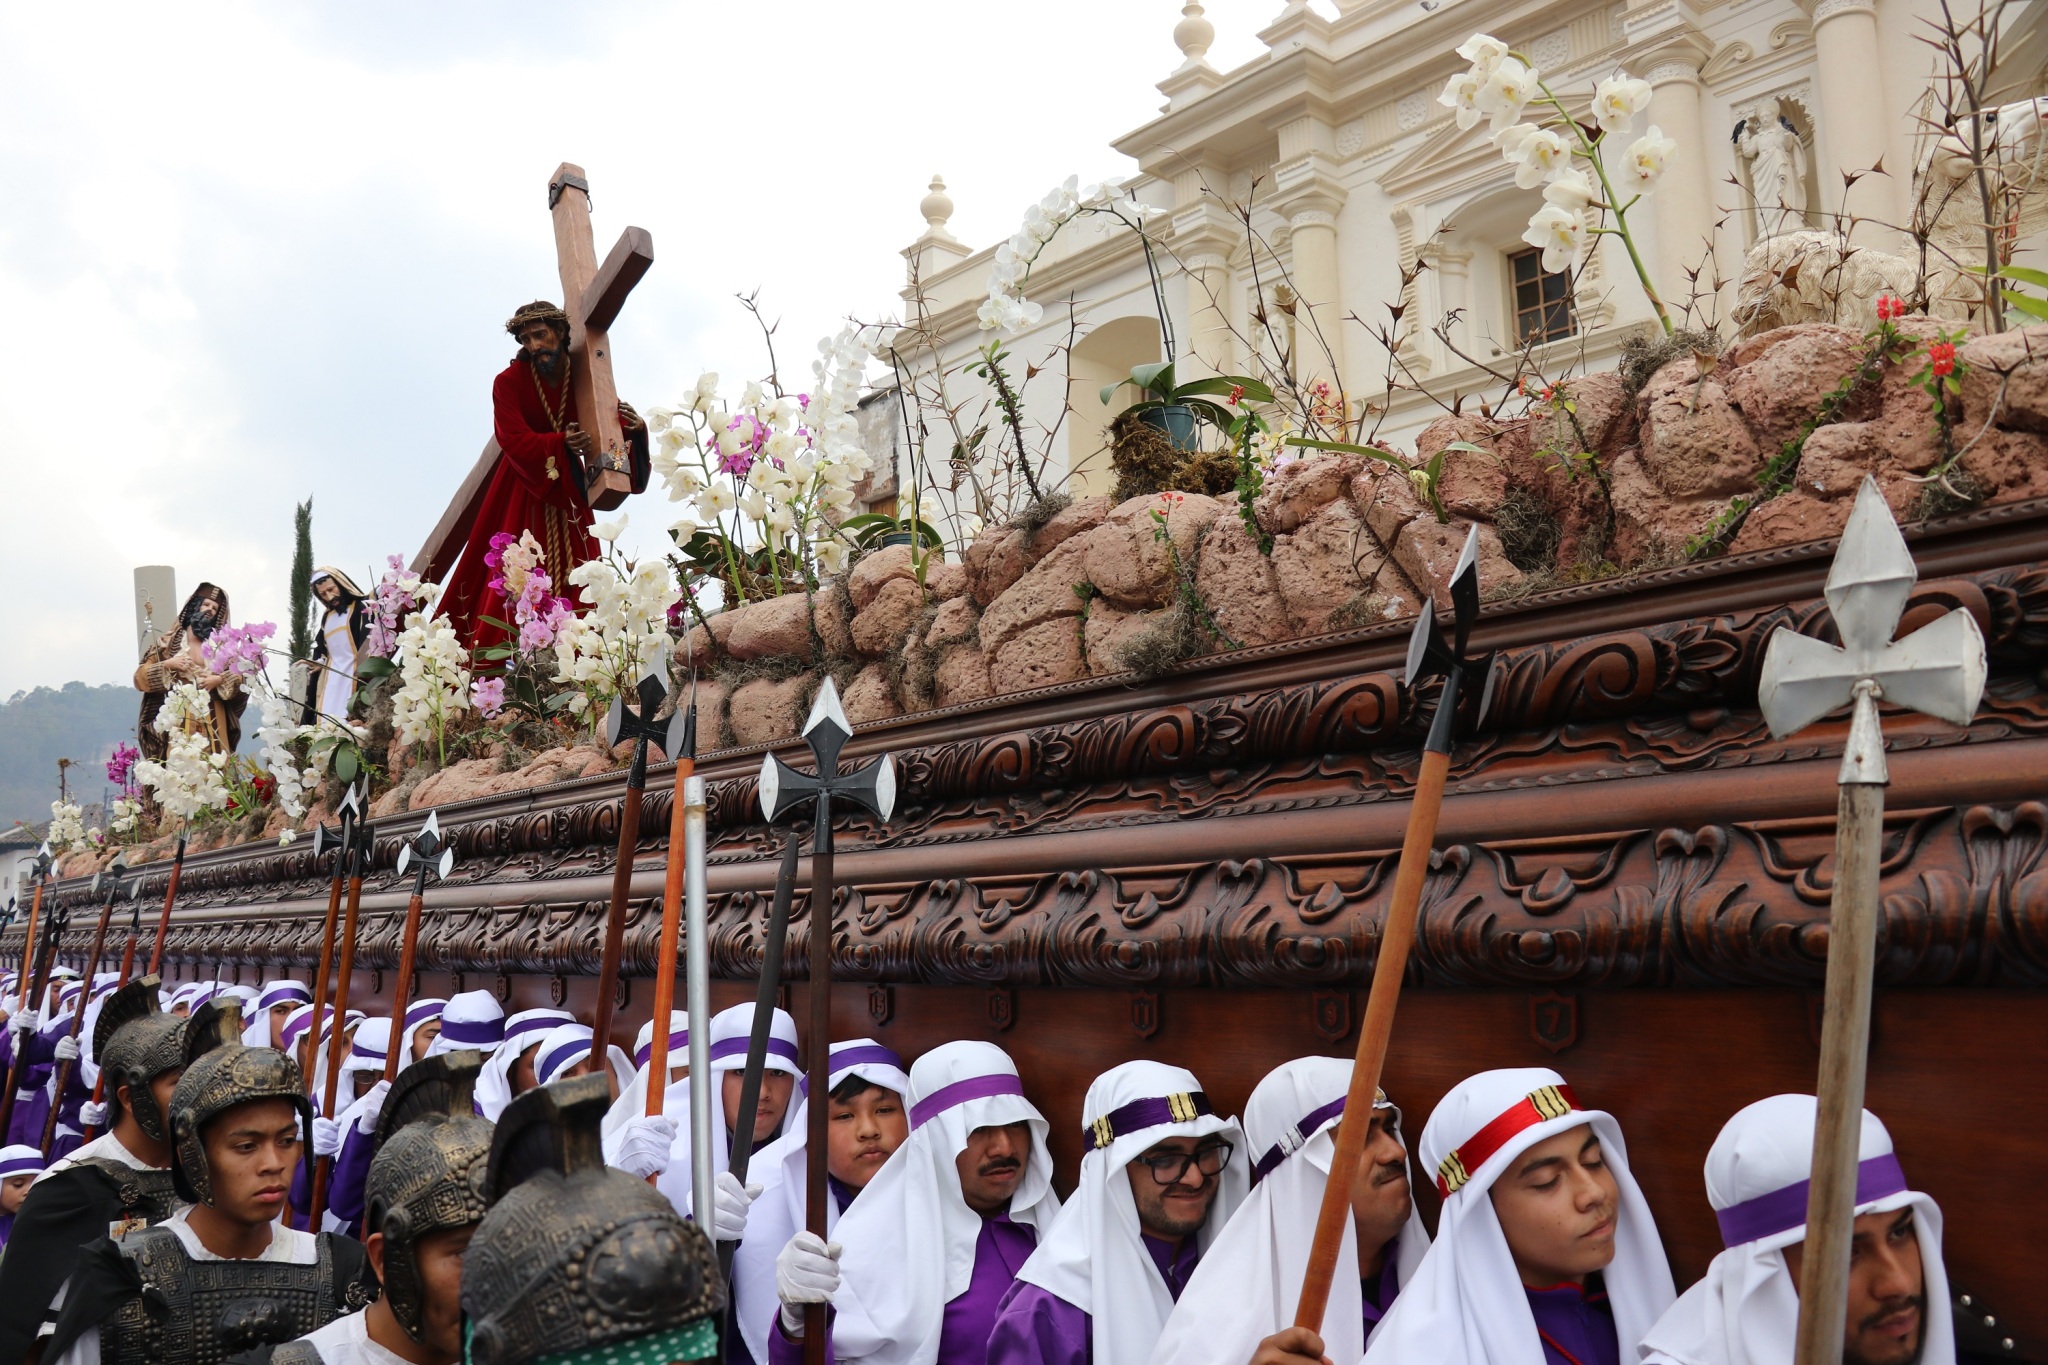 Las procesiones de Antigua Guatemala reúnen a miles de personas. (Foto: Hemeroteca PL)